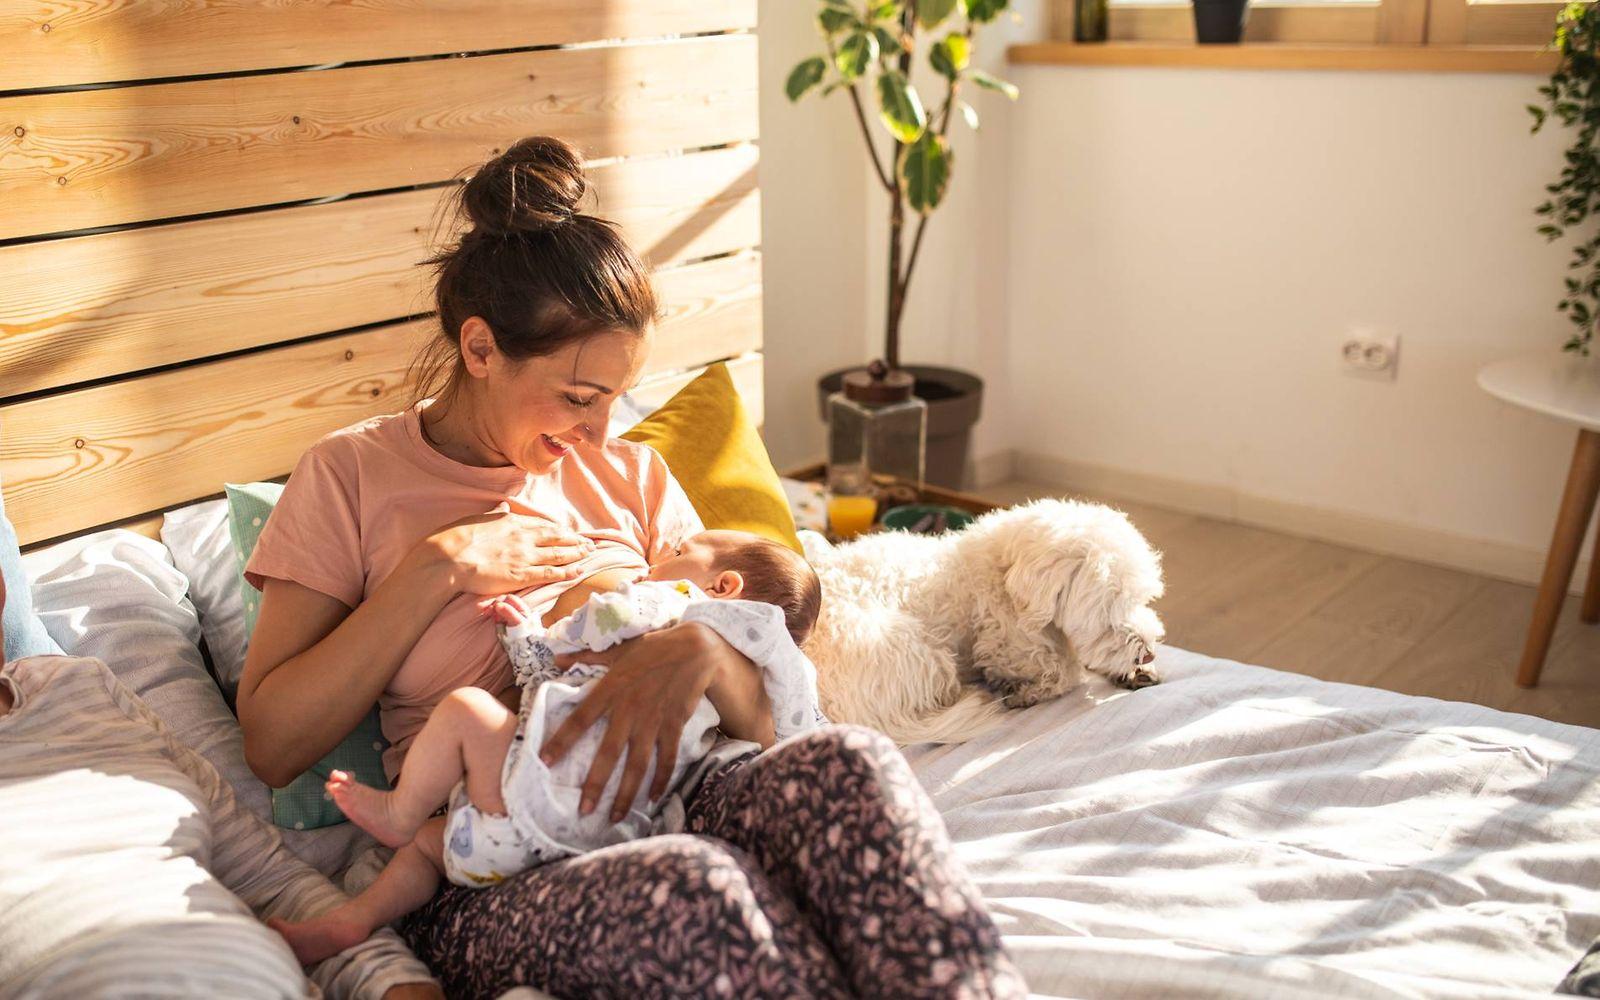 Stillen oder Flasche?: Mutter stillt im Bett ihren Säugling und lächelt entspannt